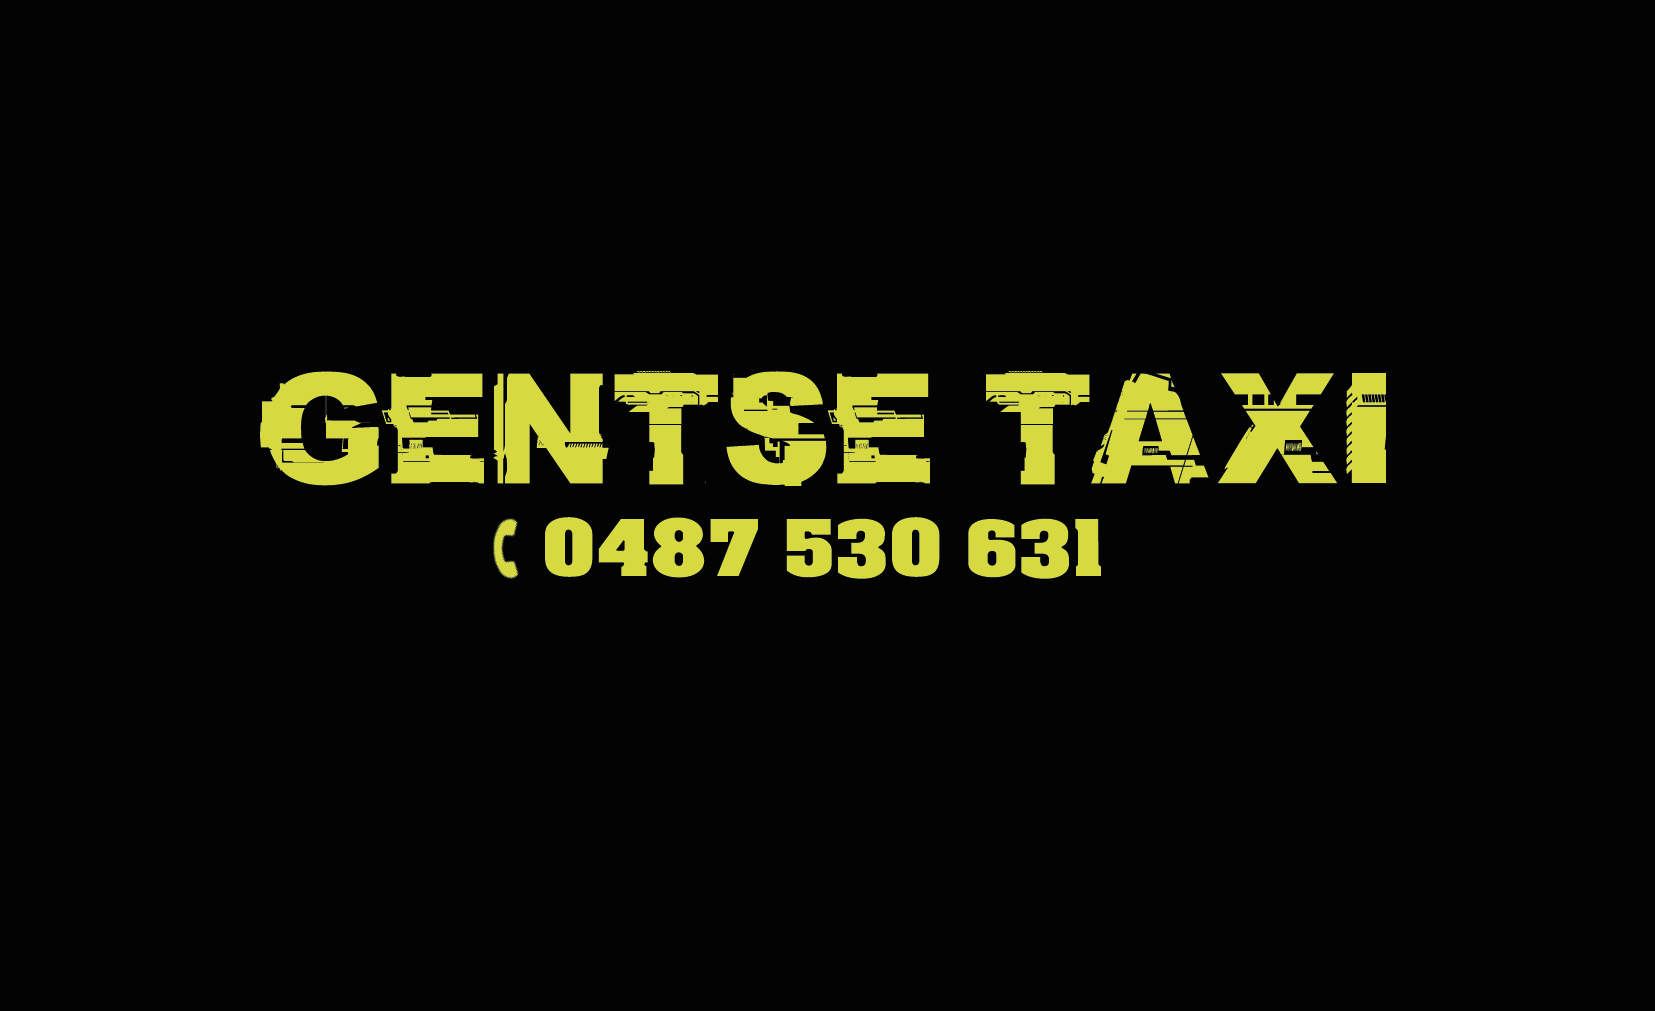 taxibedrijven met luchthavenvervoer Hansbeke Gentse Taxi